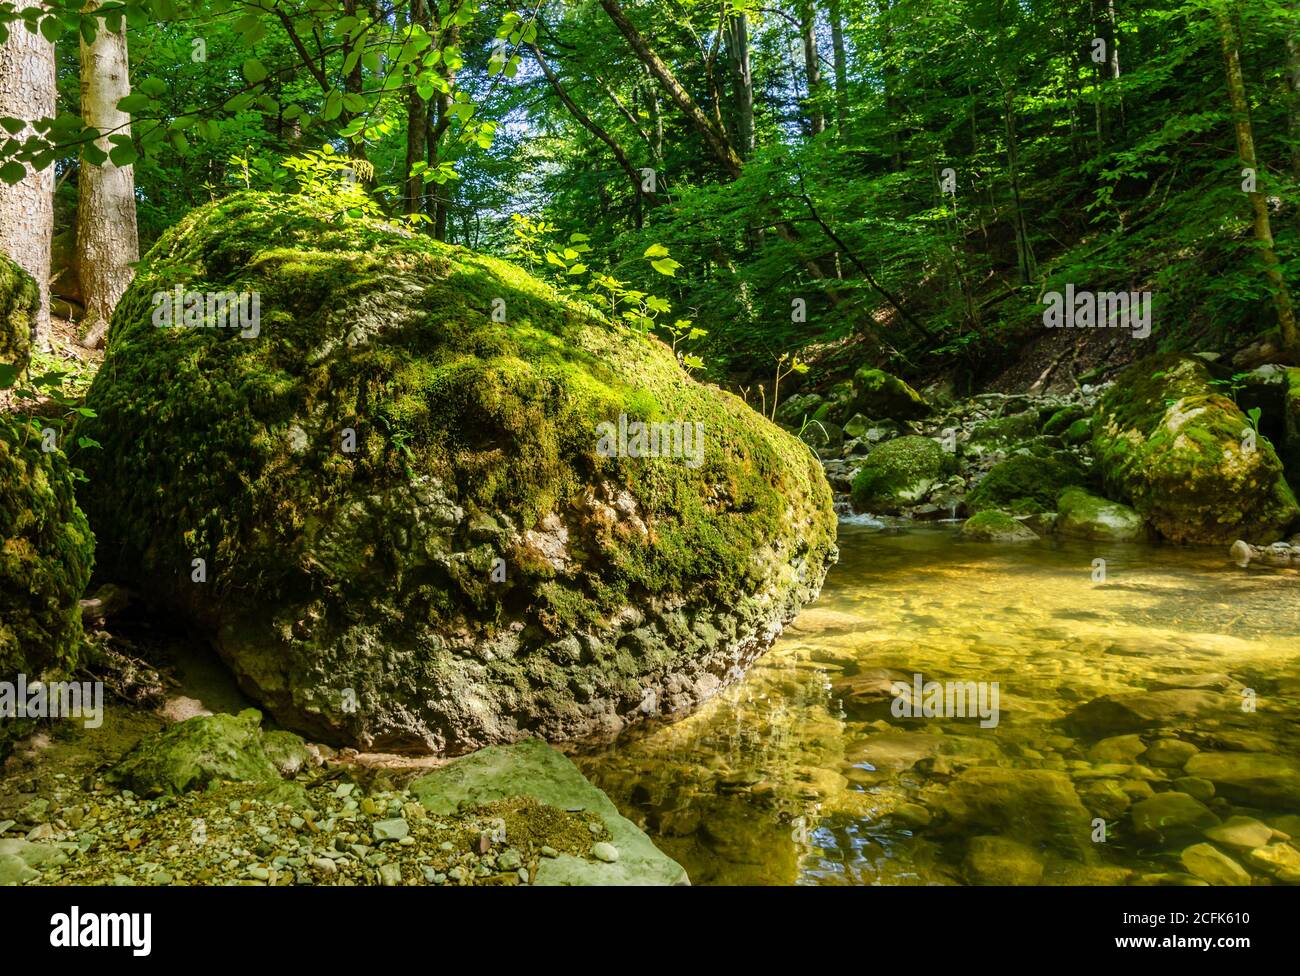 Großer Felsen im Sonnenlicht, überwuchert mit grünem Moos, am Bach eines Naturwaldes. Großer Stein am Rande eines Bachbettes an einem sonnigen Sommertag Stockfoto